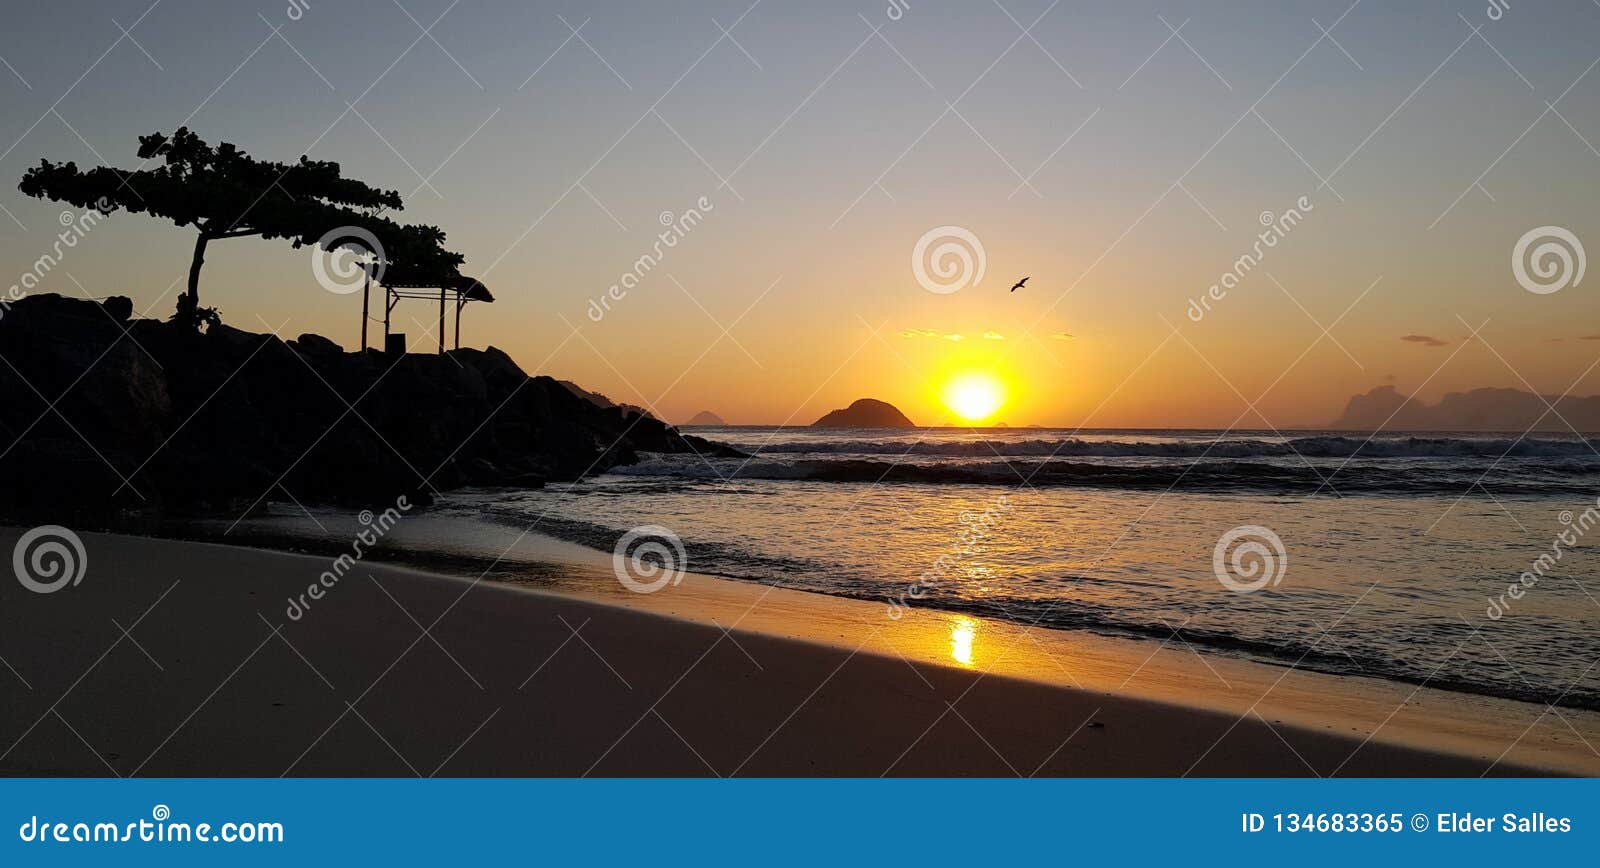 itaipu beach on the sunset